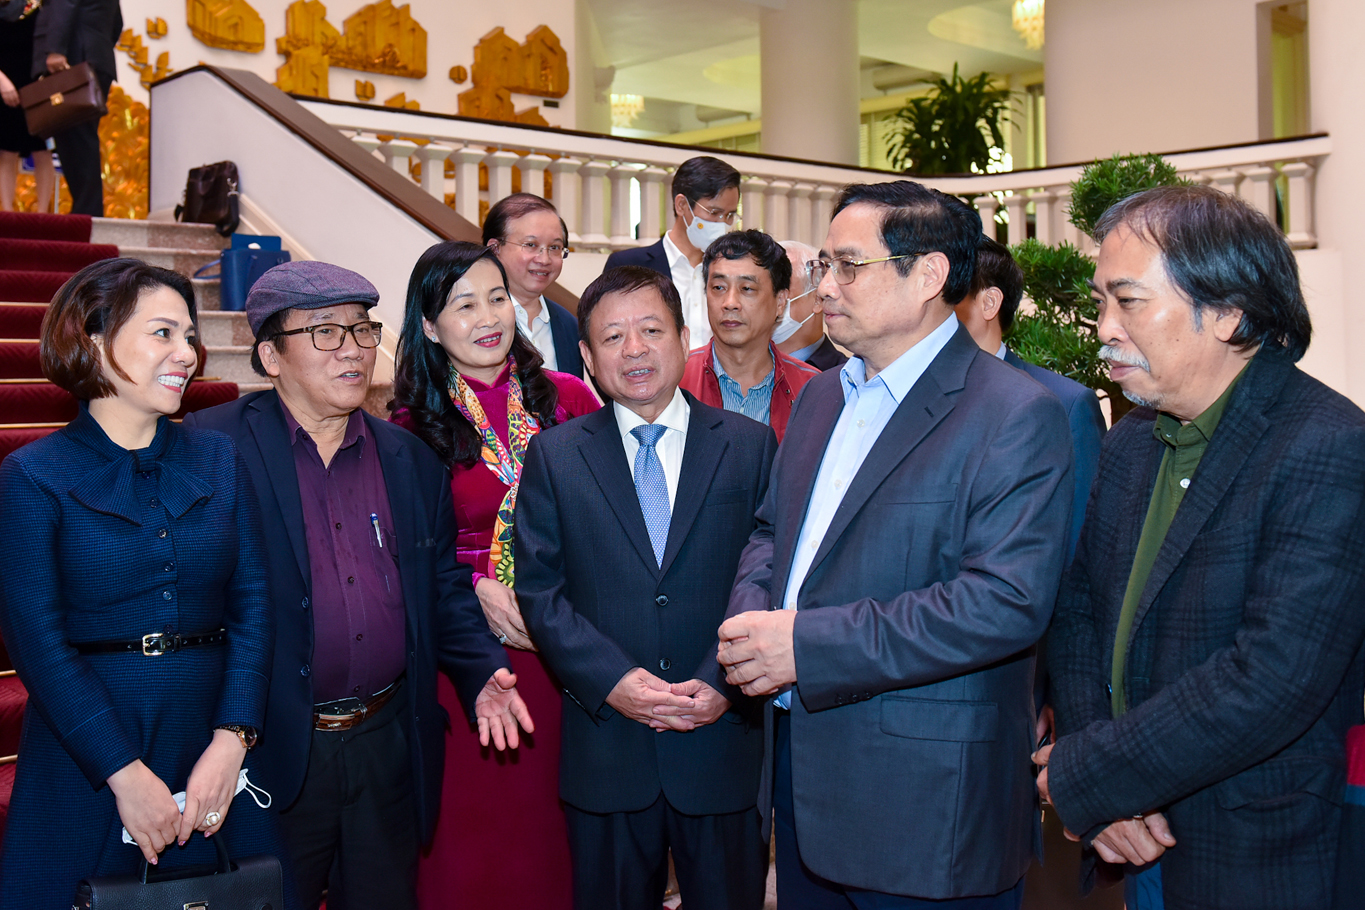 Thủ tướng Phạm Minh Chính: Văn học, nghệ thuật phải phát triển ngang tầm với kinh tế, chính trị, xã hội